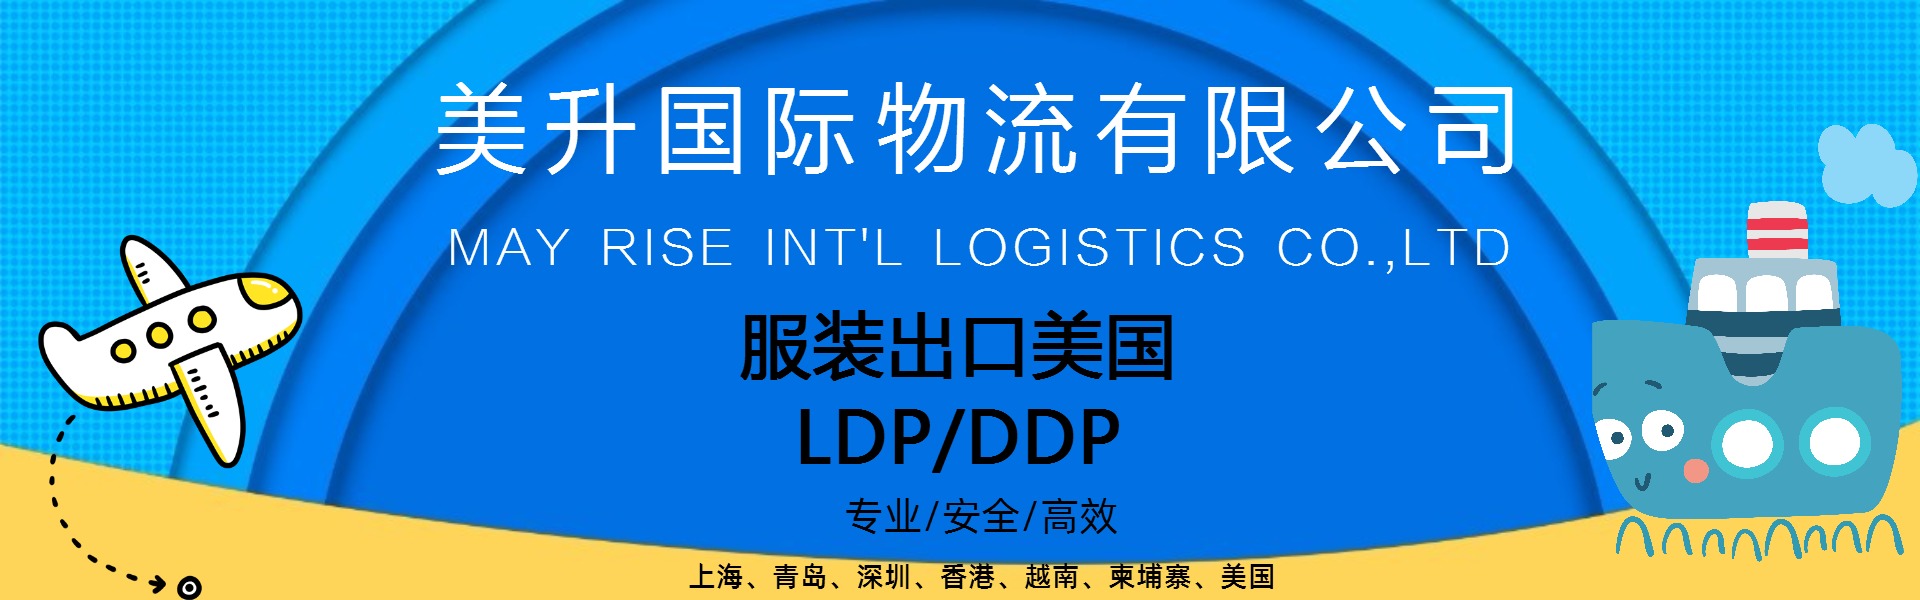 服装外贸企业优选LDP DPP货运代理 美升国际